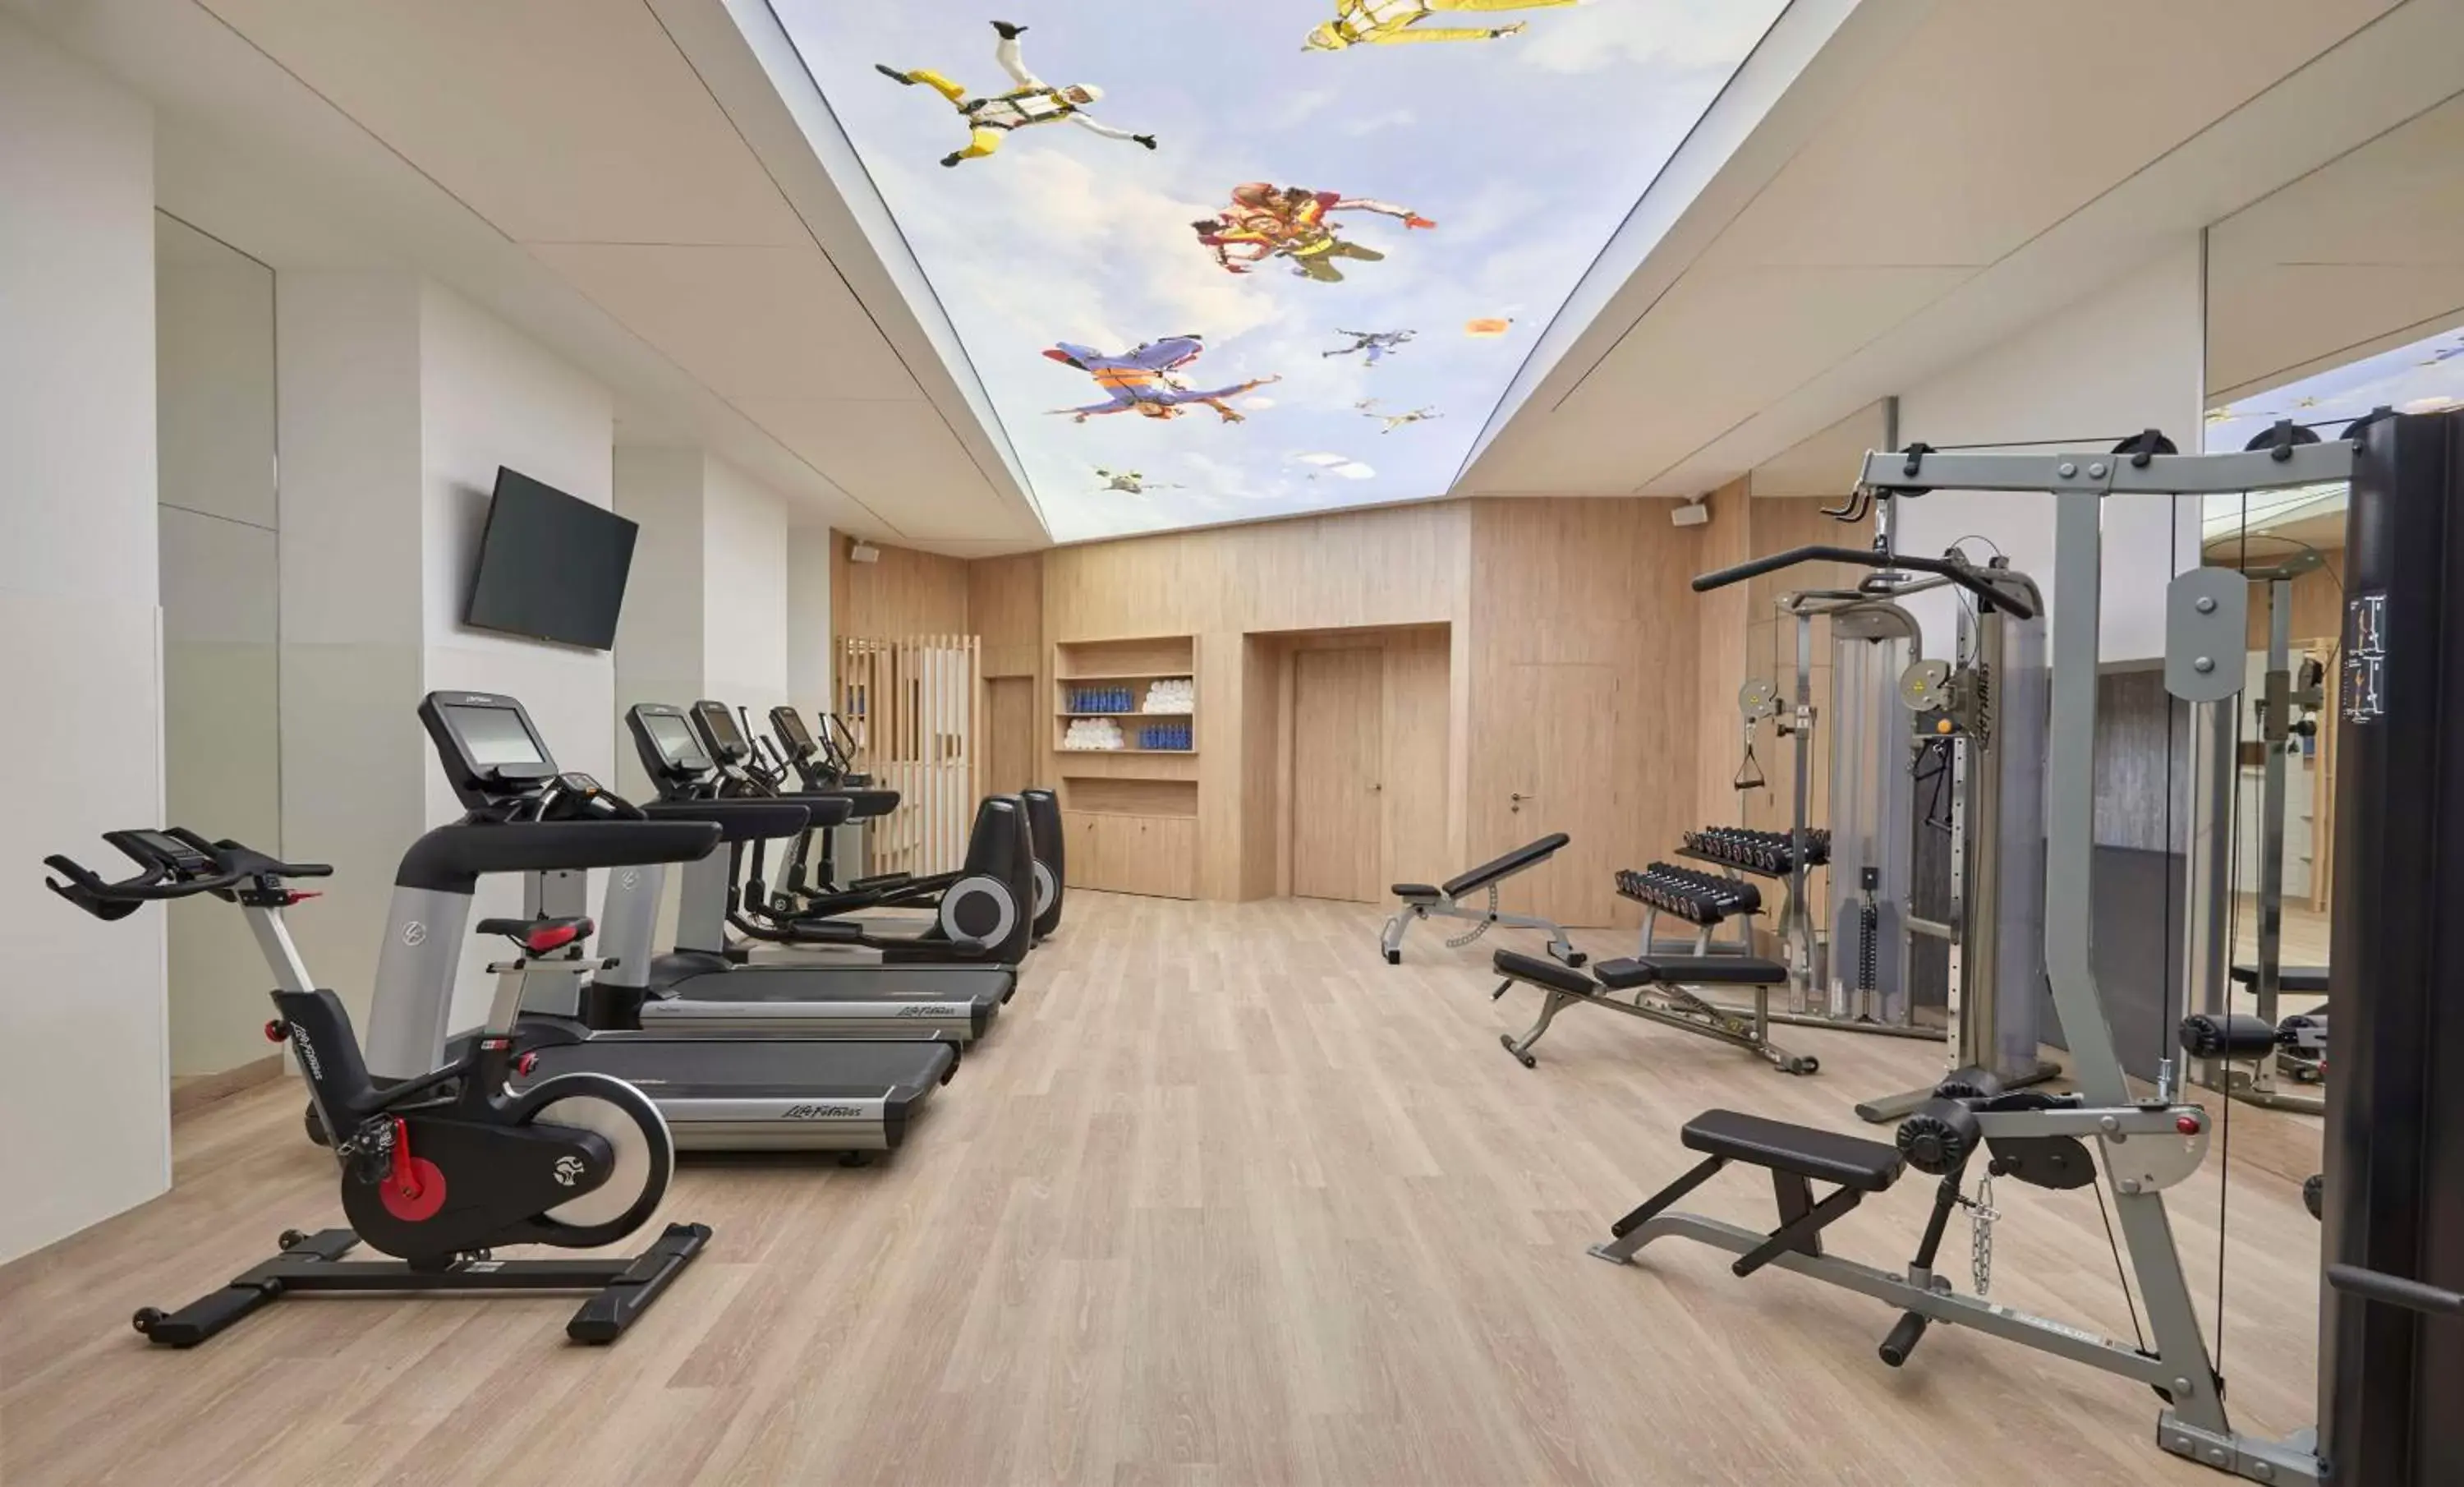 Fitness centre/facilities, Fitness Center/Facilities in Hyatt Centric Gran Via Madrid